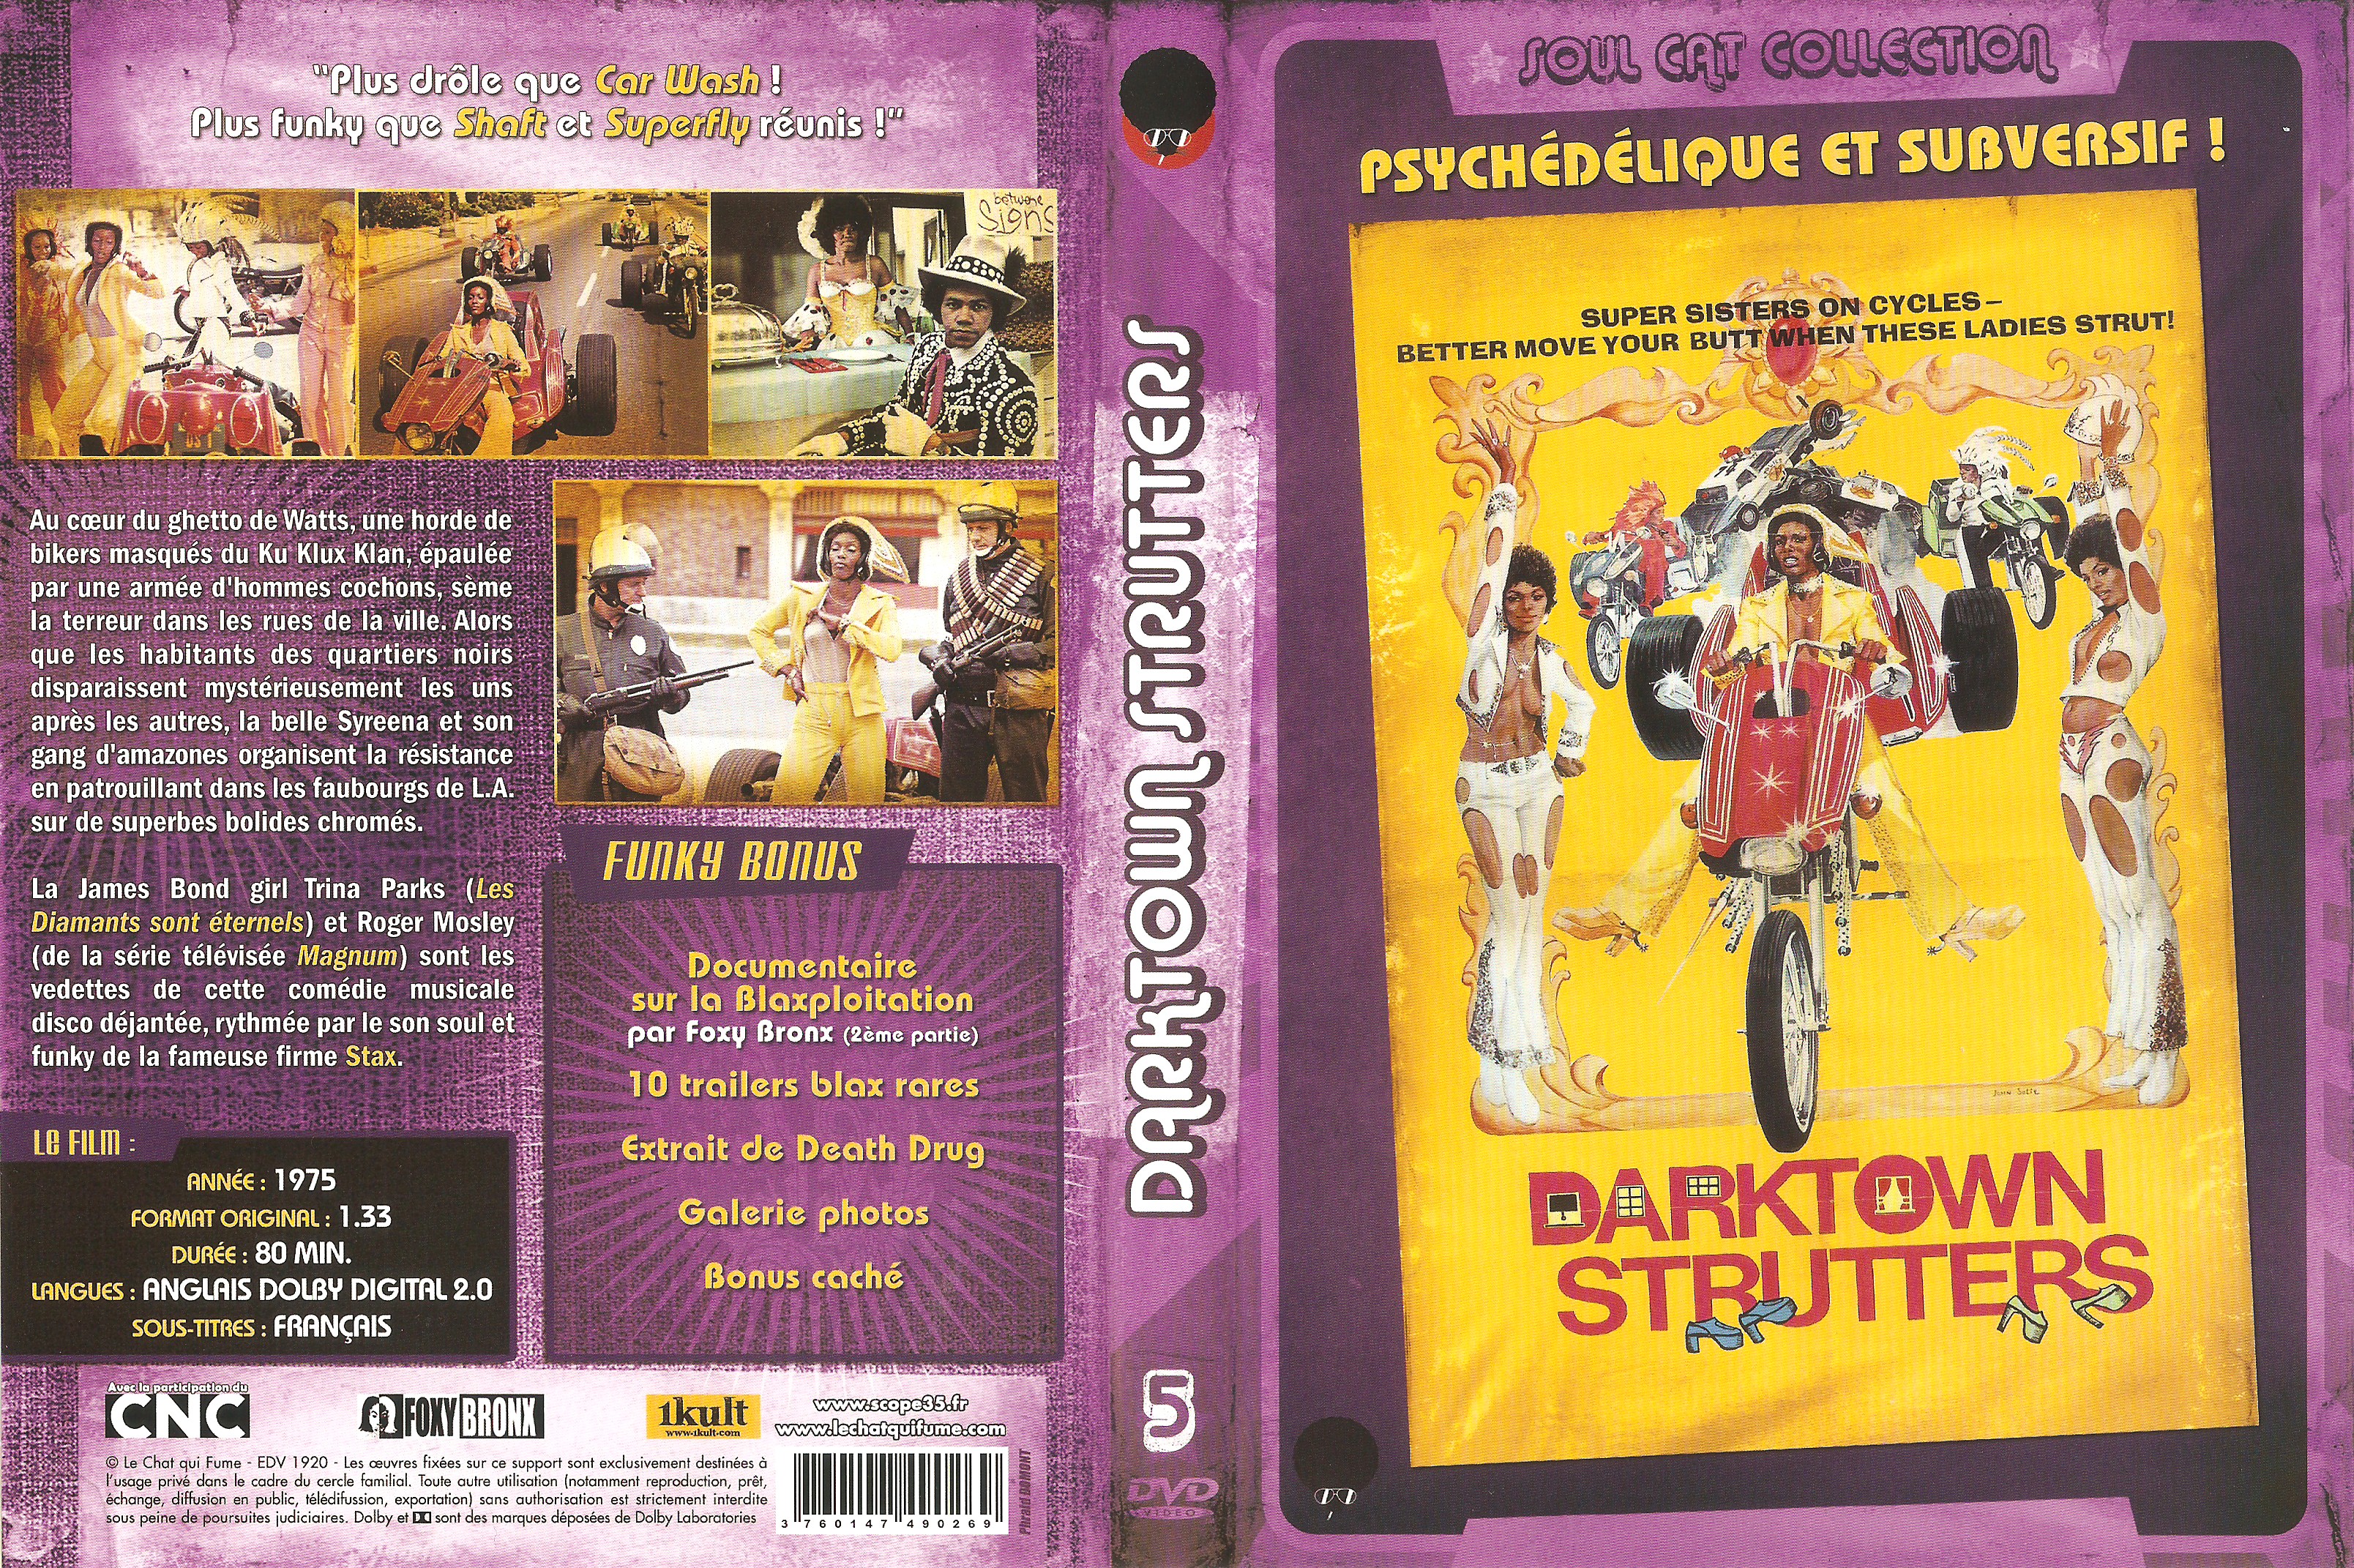 Jaquette DVD Darktown Strutters